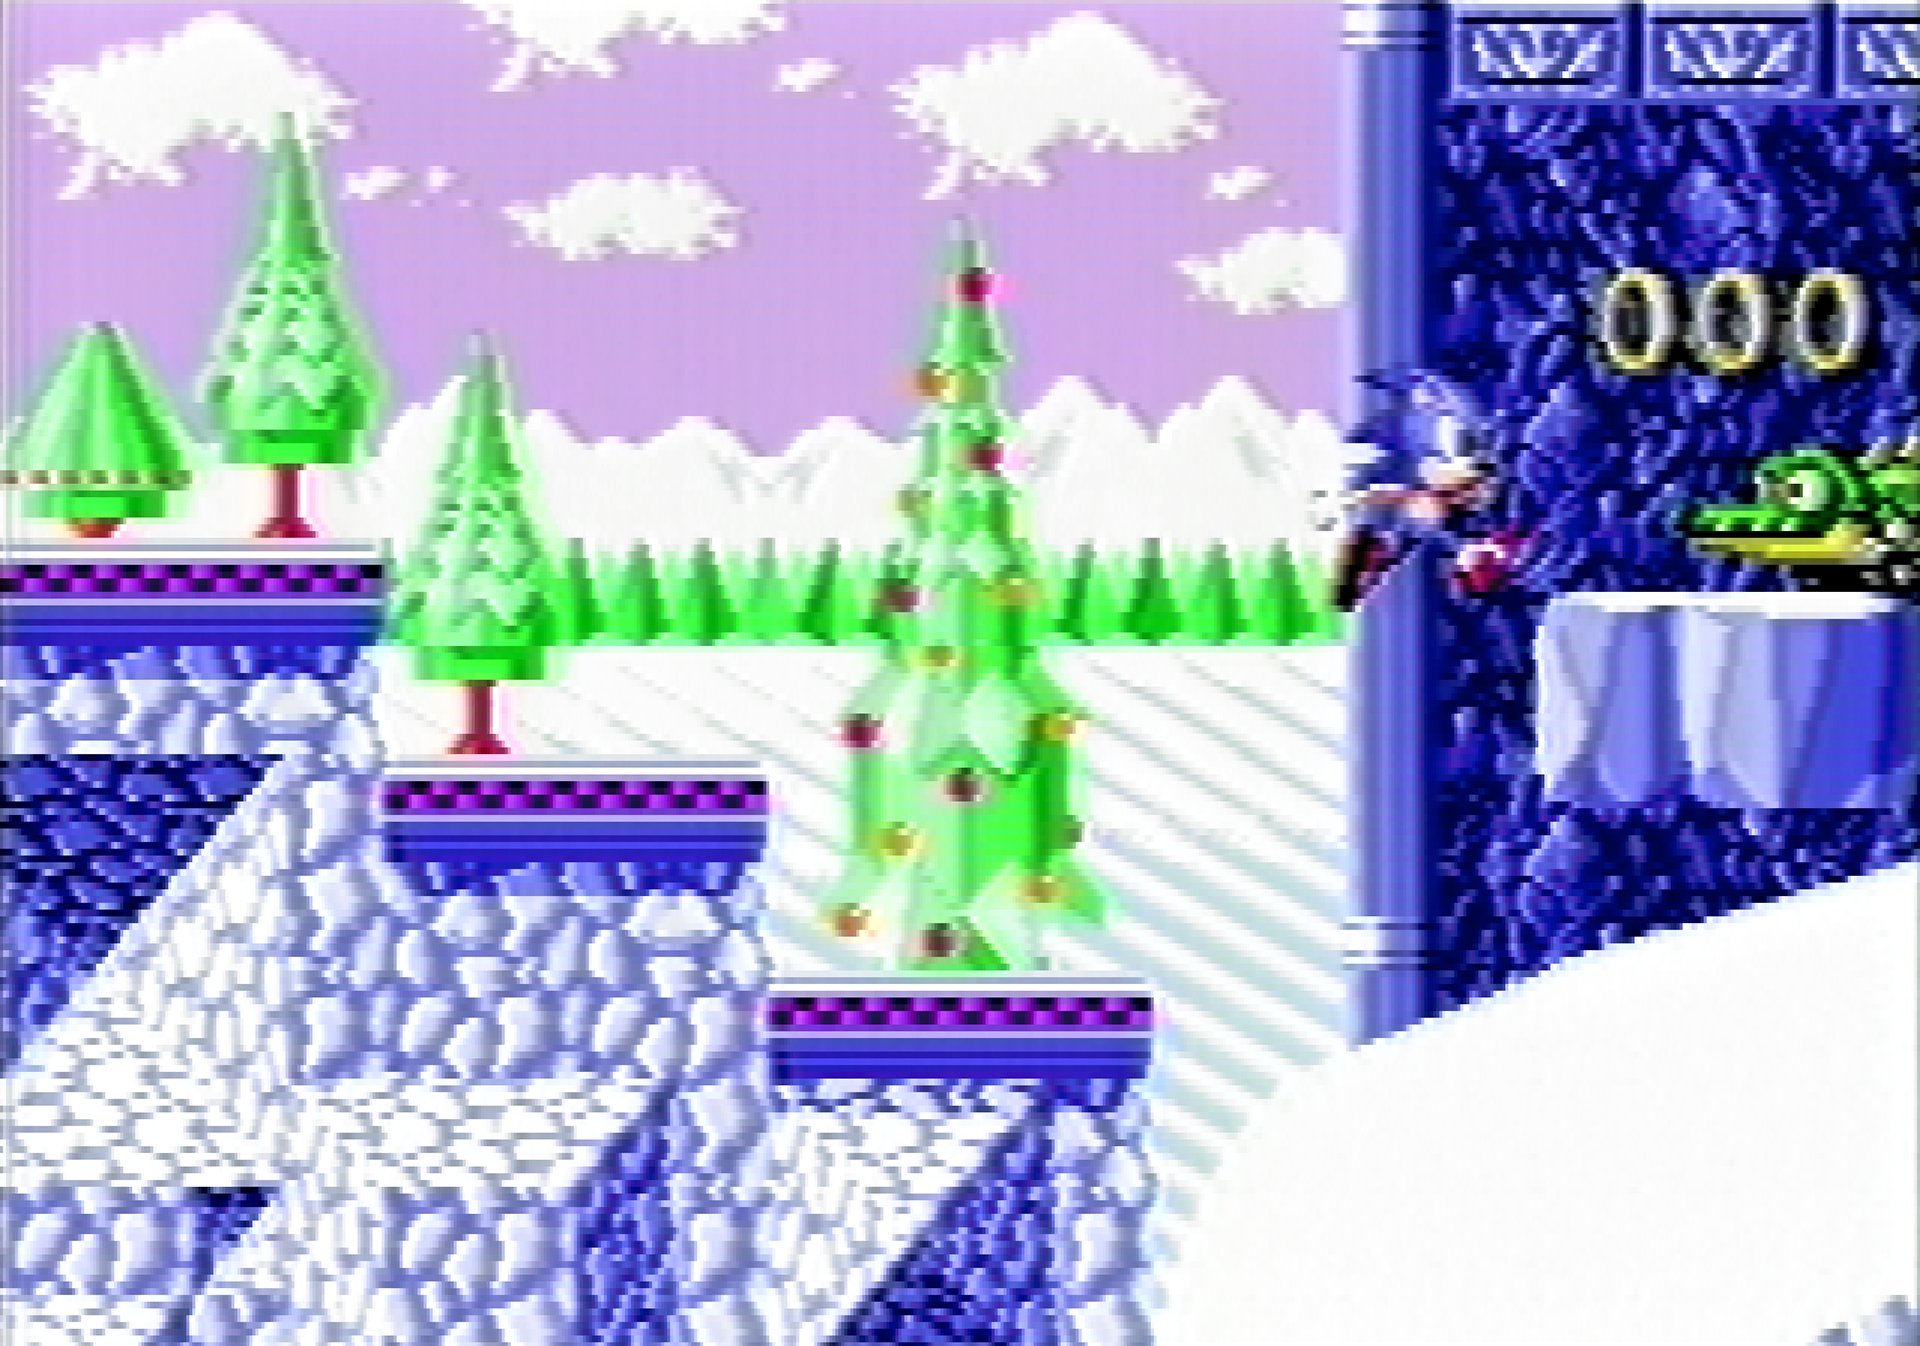 Power Sonic – Mais antigo website de Sonic the Hedgehog do Brasil